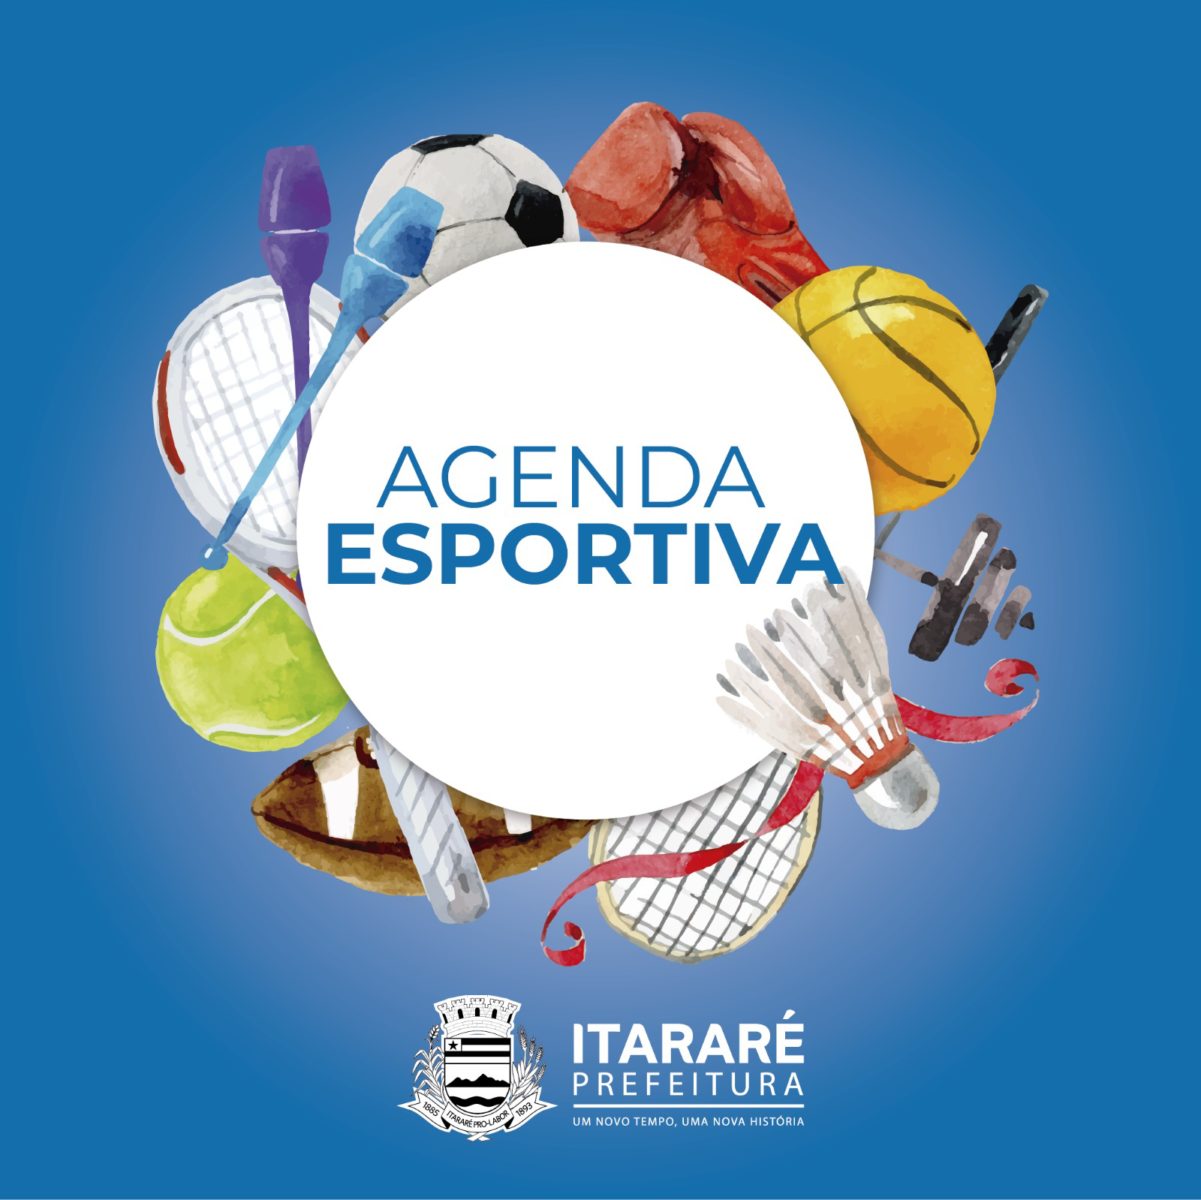 Agenda Esportiva: VII Copa de Basquetebol Umberto Ferreira de Moura – “Vidrinho” começa neste sábado (14) em Itararé (SP)